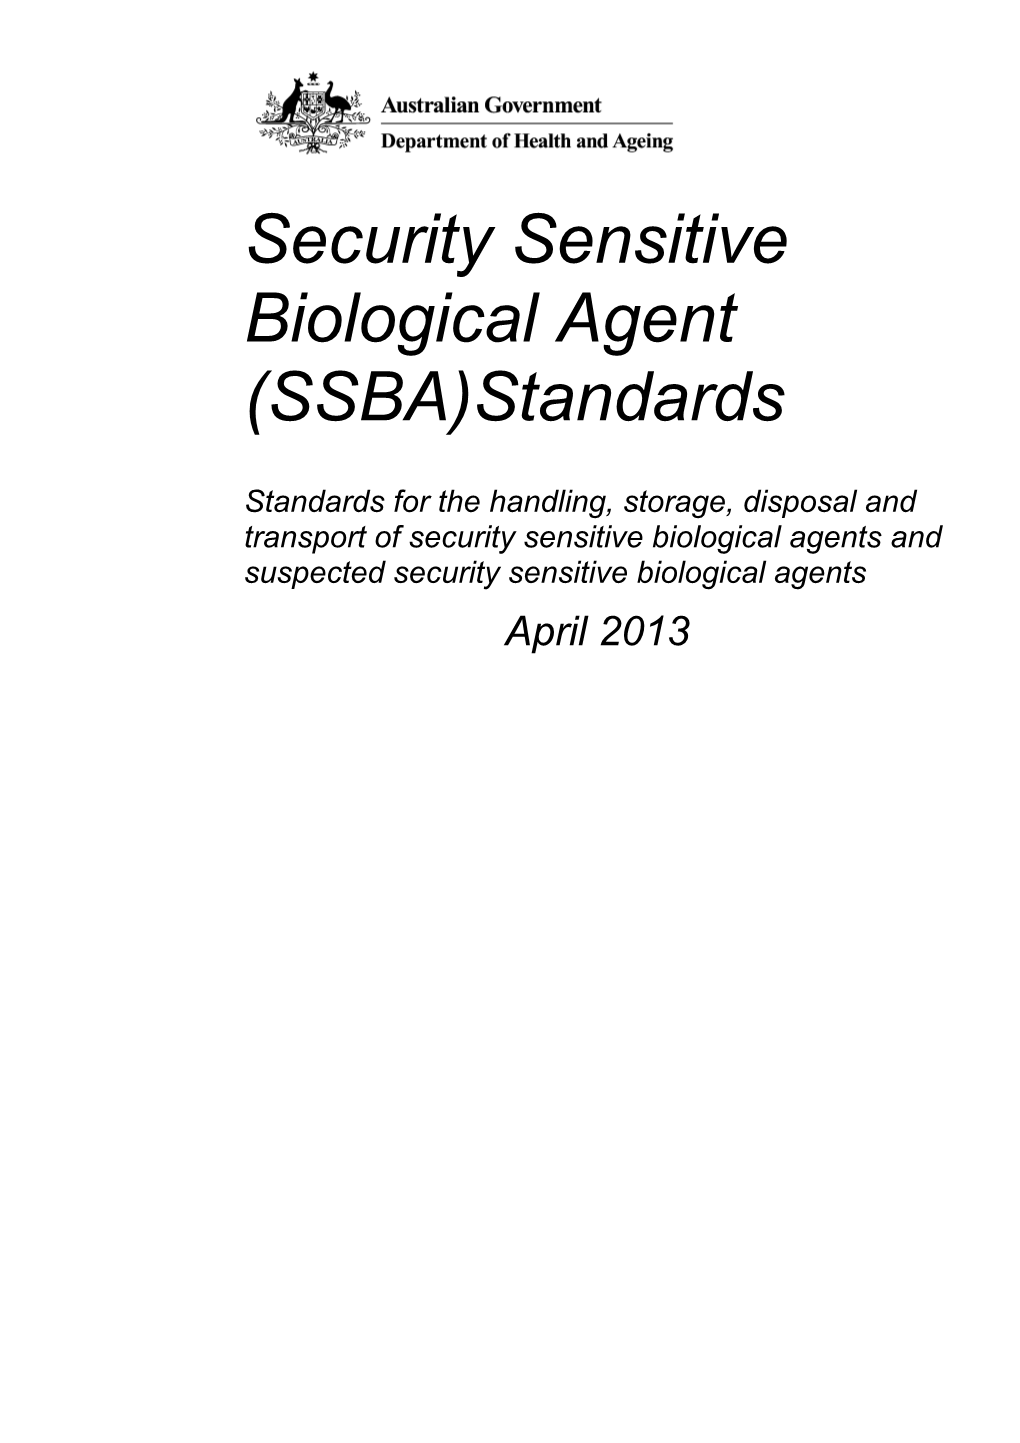 Full Publication - Security Sensitive Biological Agent (SSBA) Standards